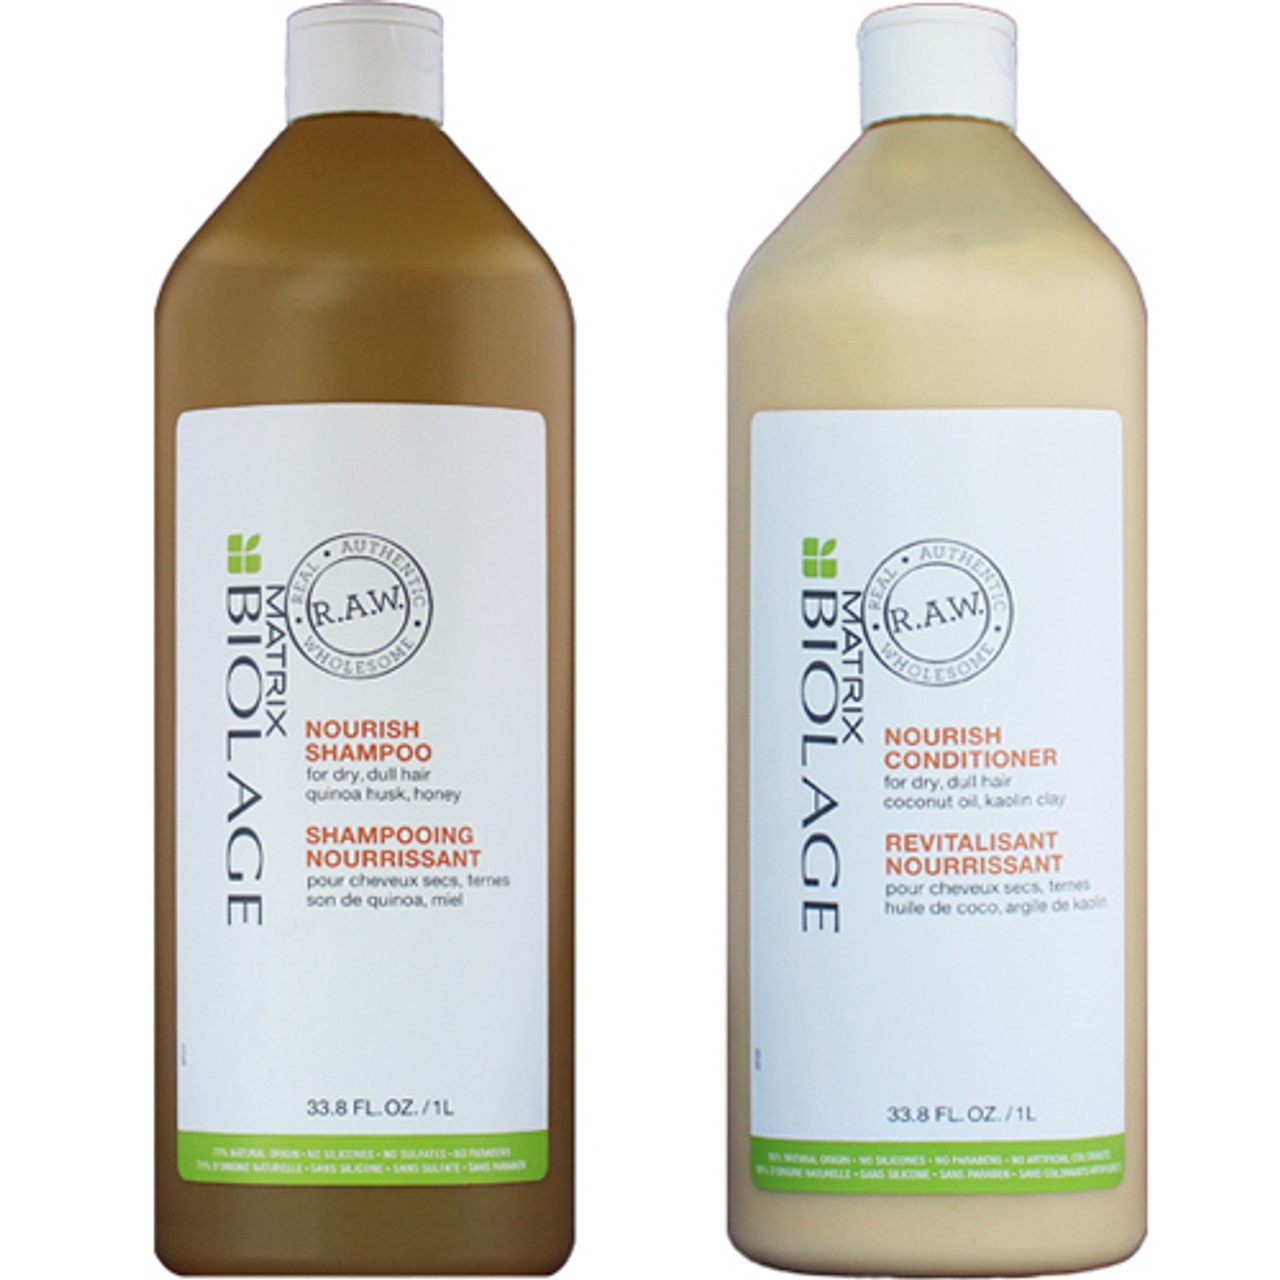 matrix biolage raw nourish szampon opinie